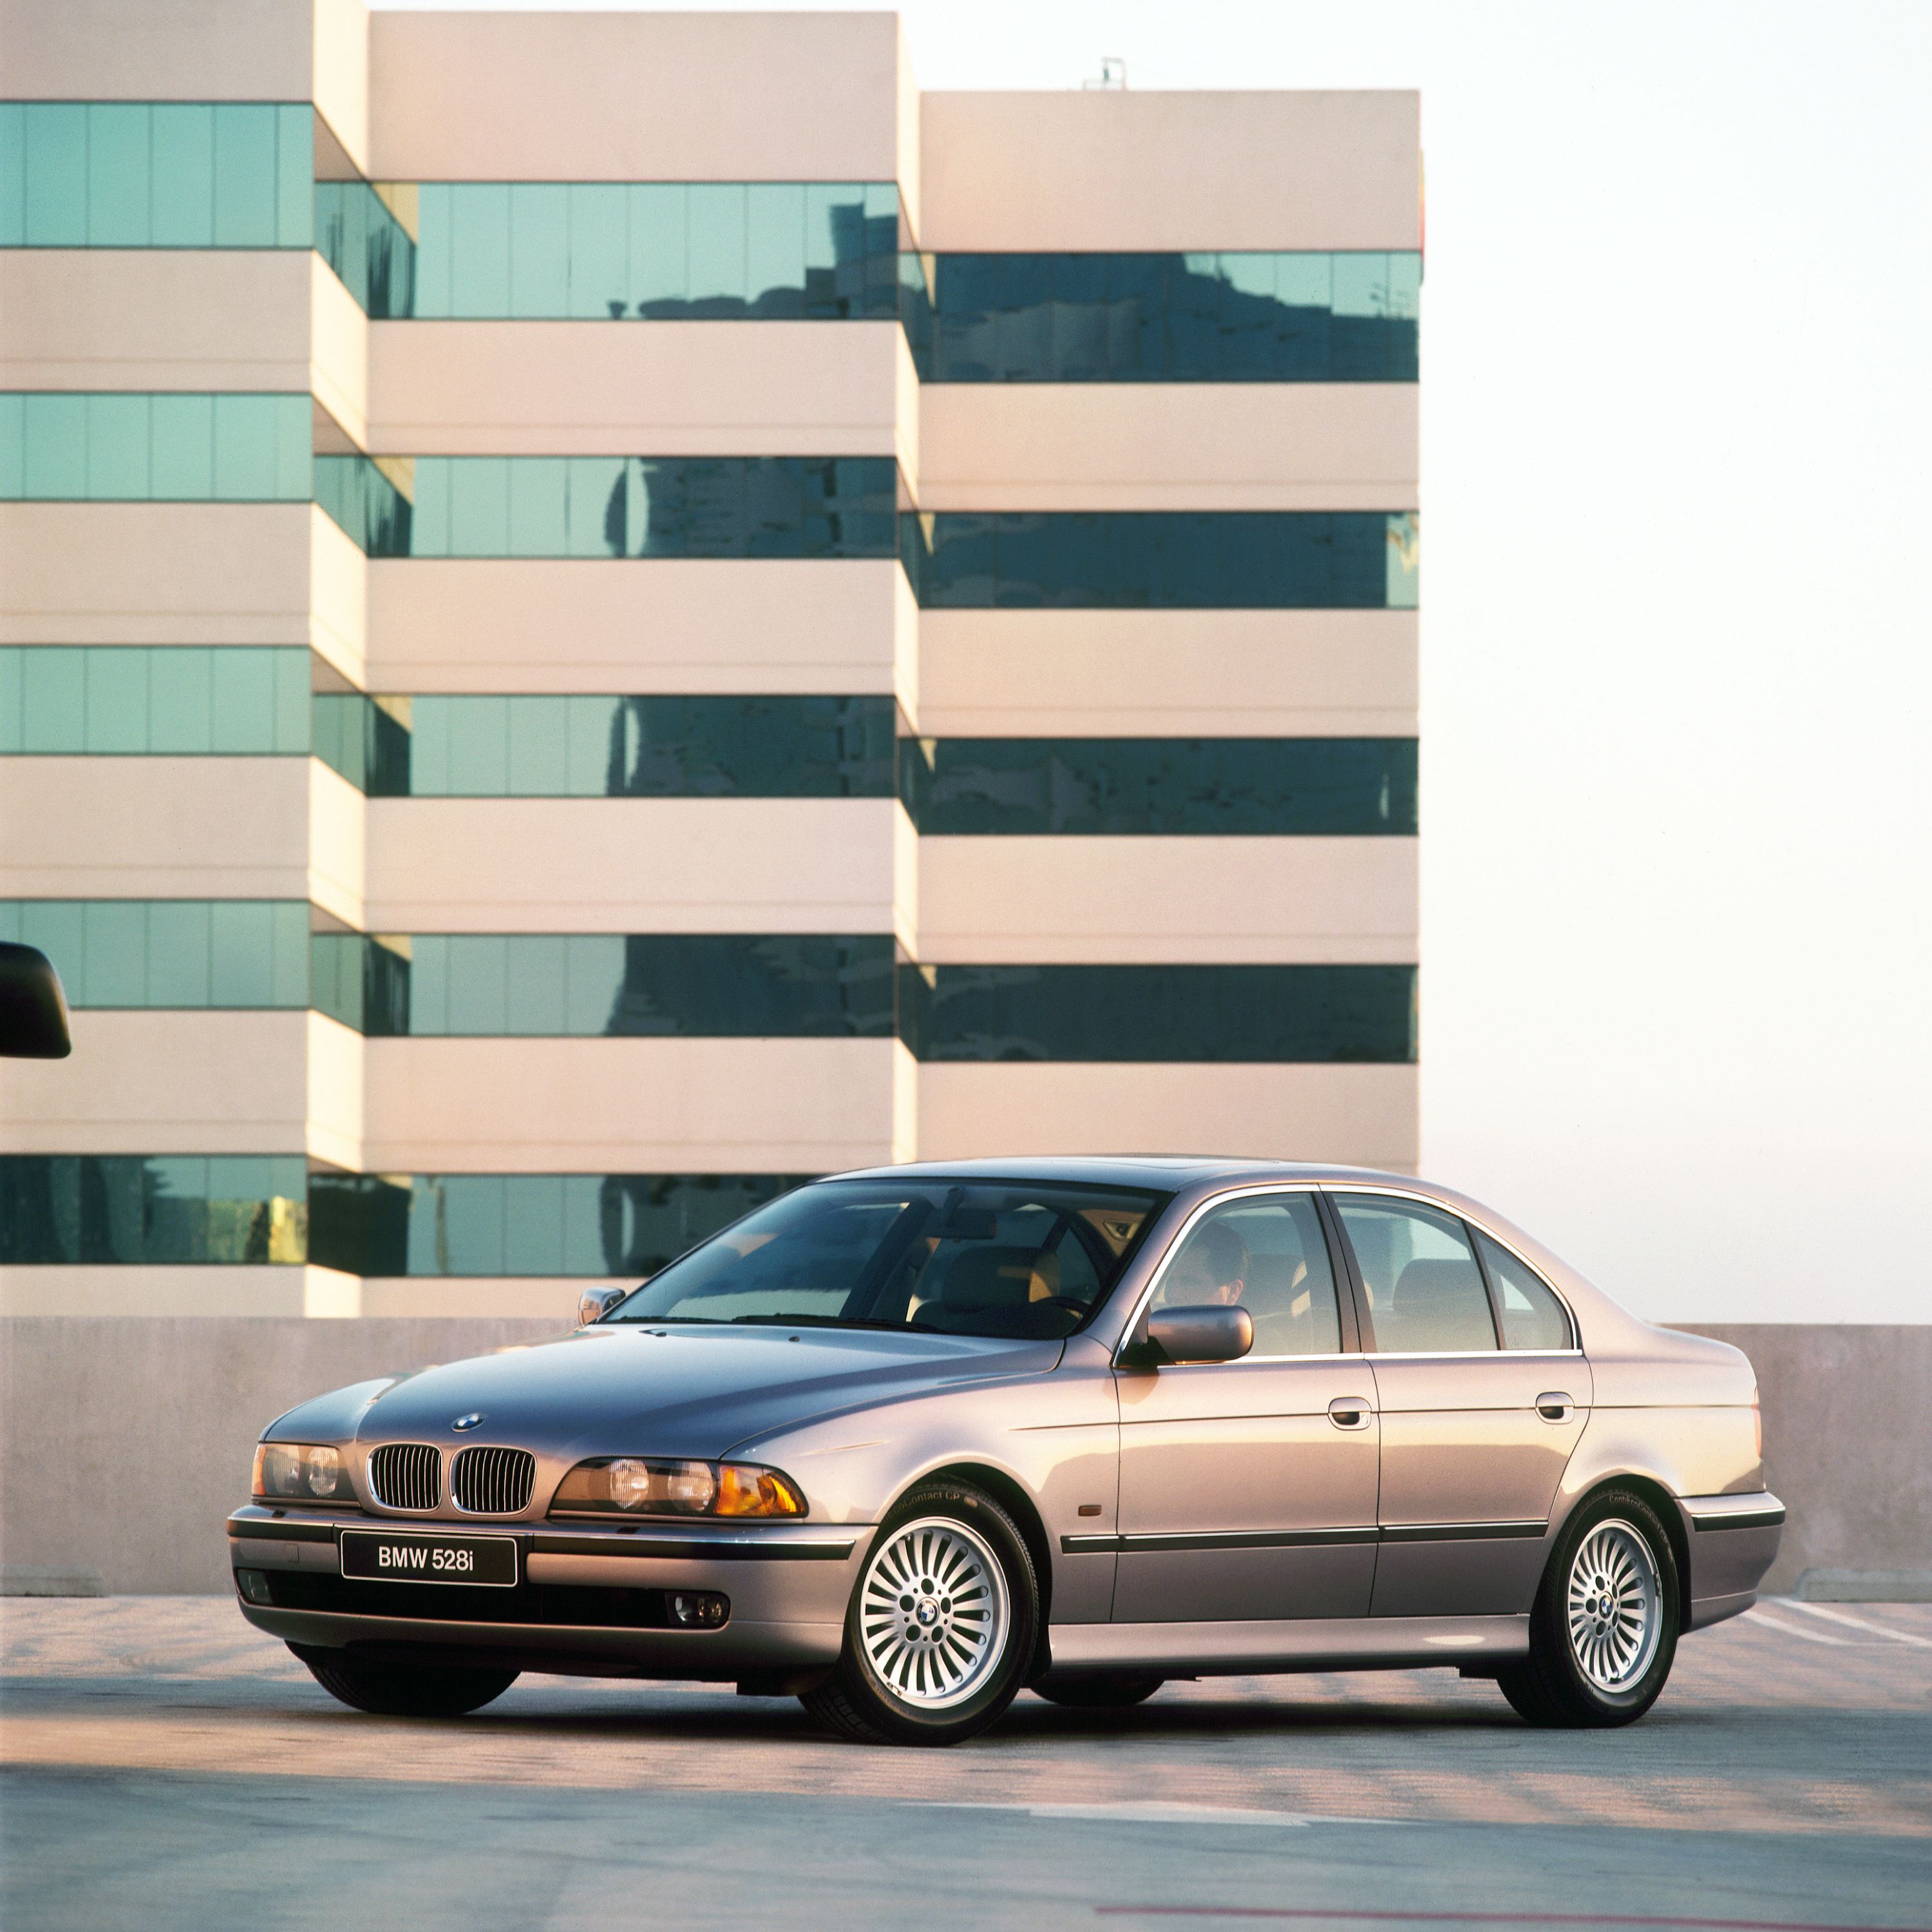 BMW řady 5 Sedan (E39) tříčtvrteční pohled zepředu na vůz parkující na střeše parkovacího domu